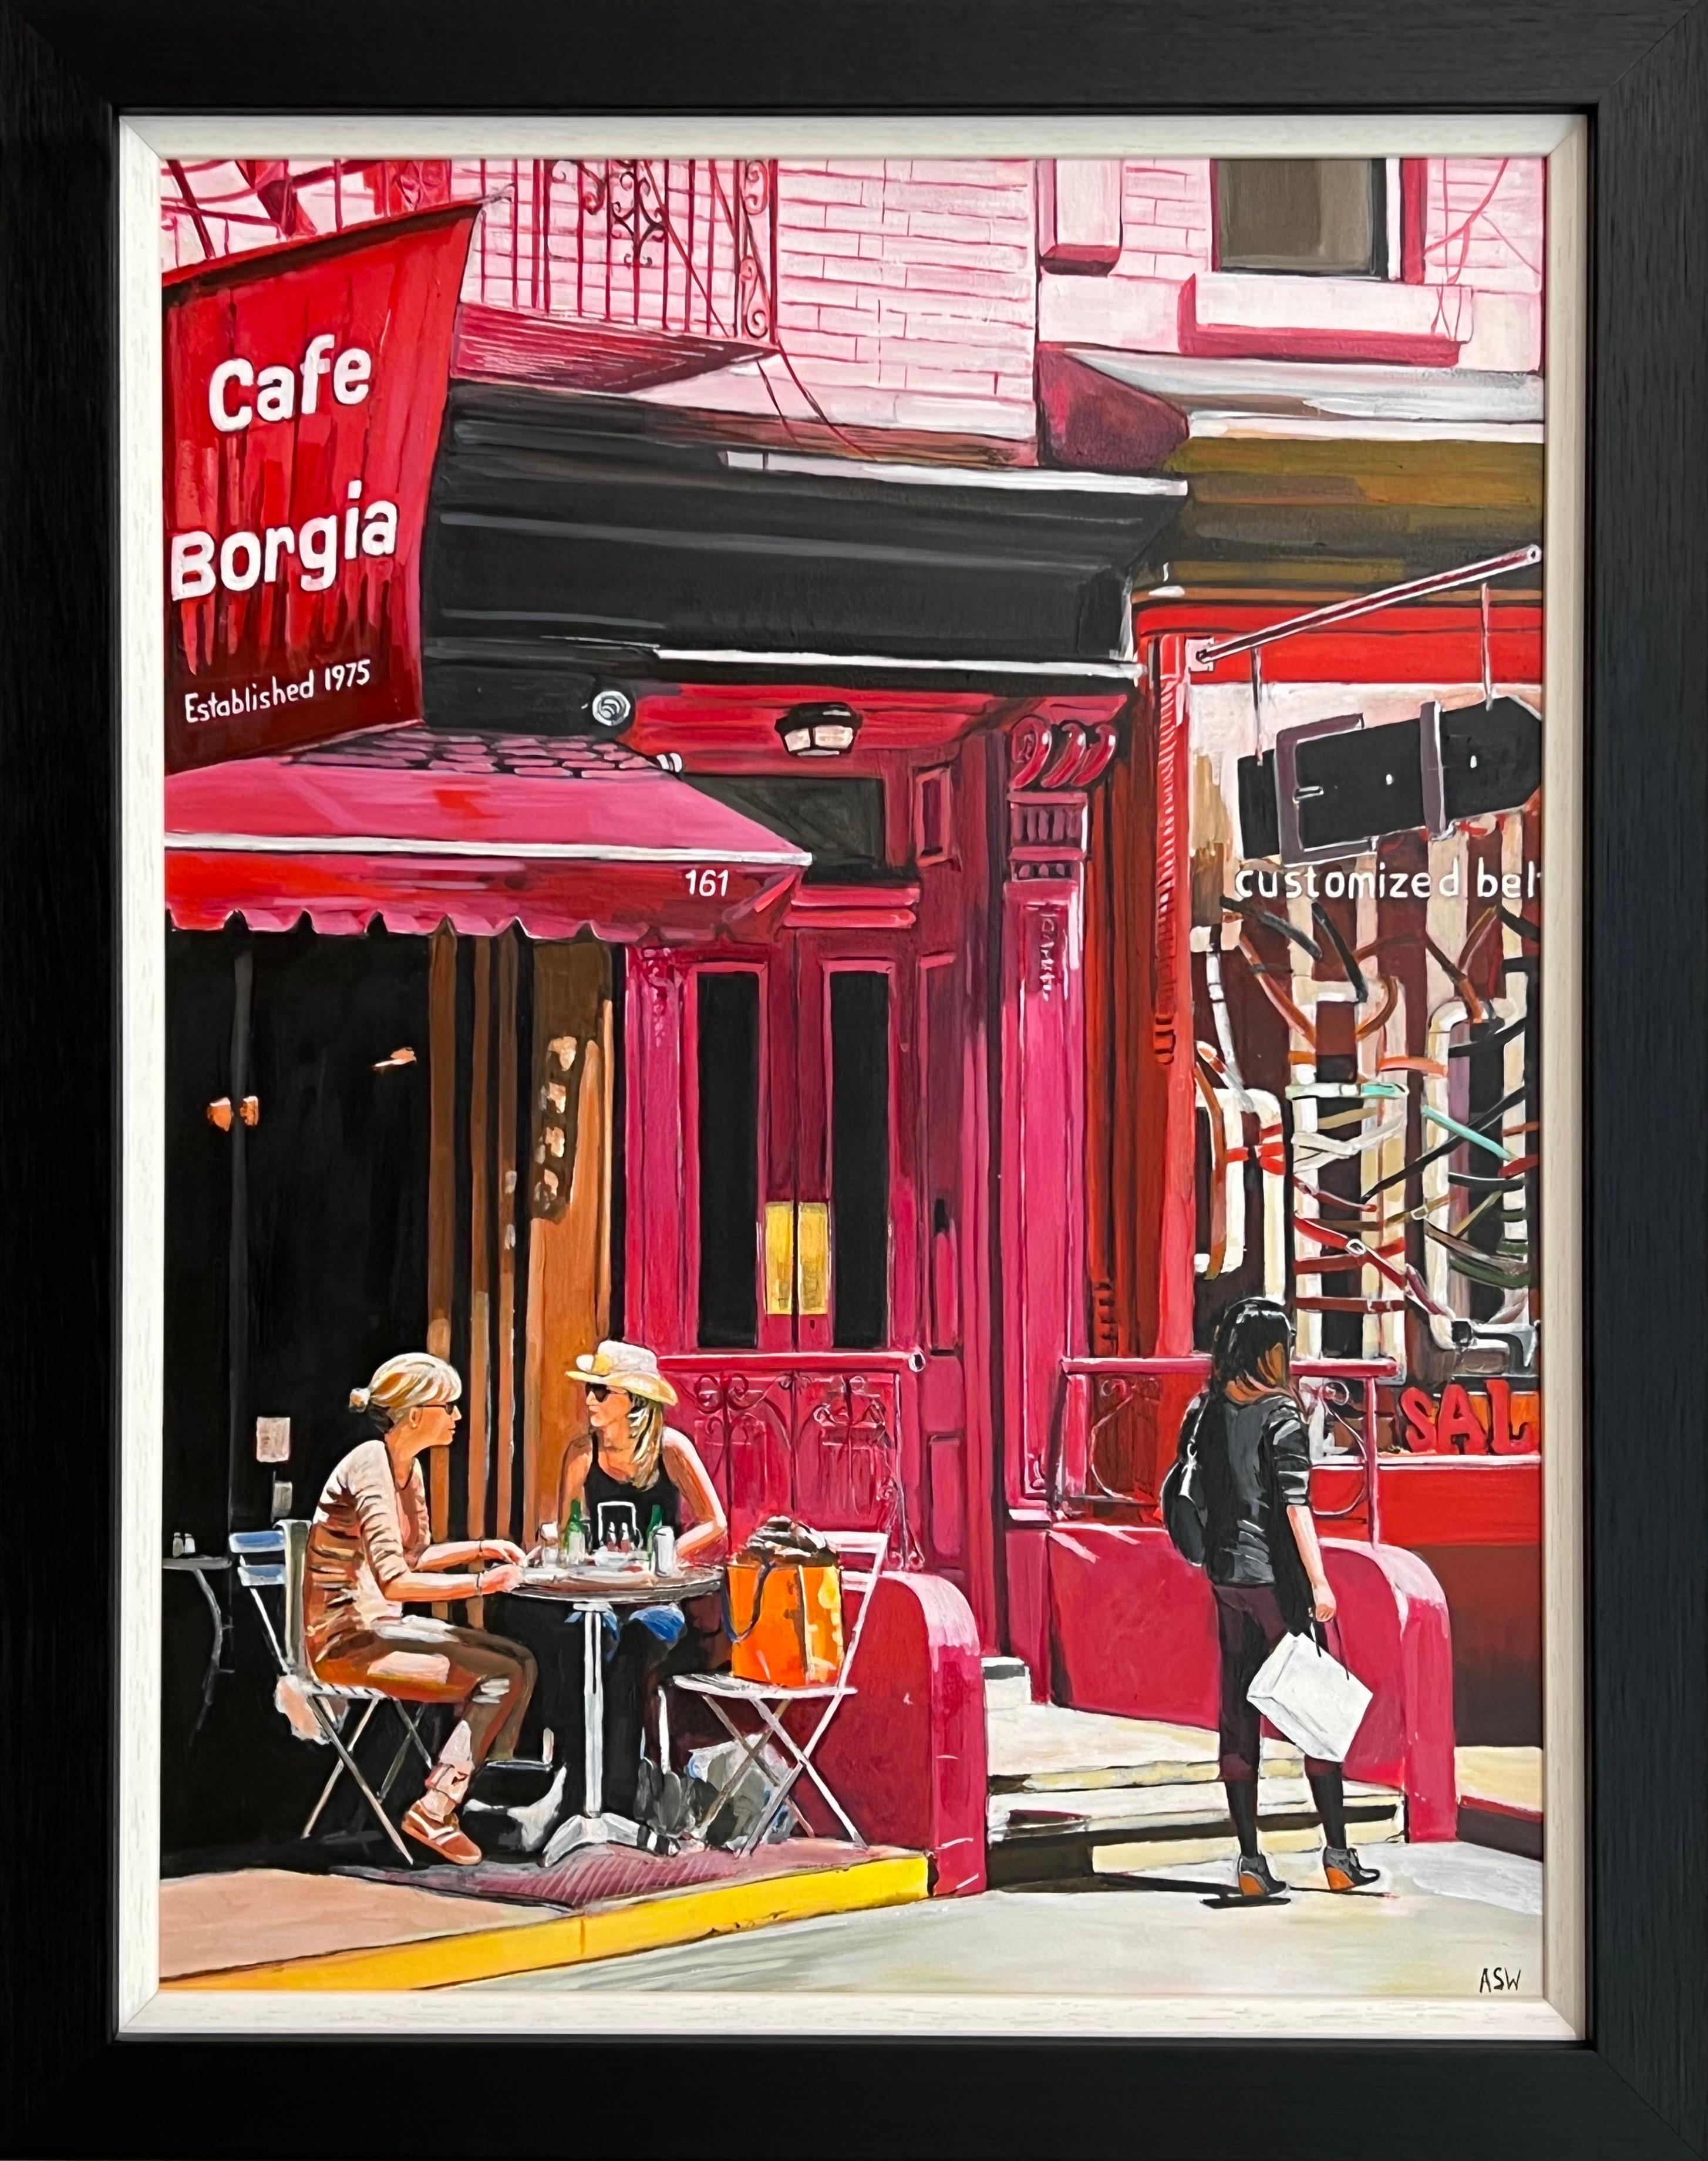 Cafe Borgia de New York avec des figures féminines par un artiste britannique contemporain